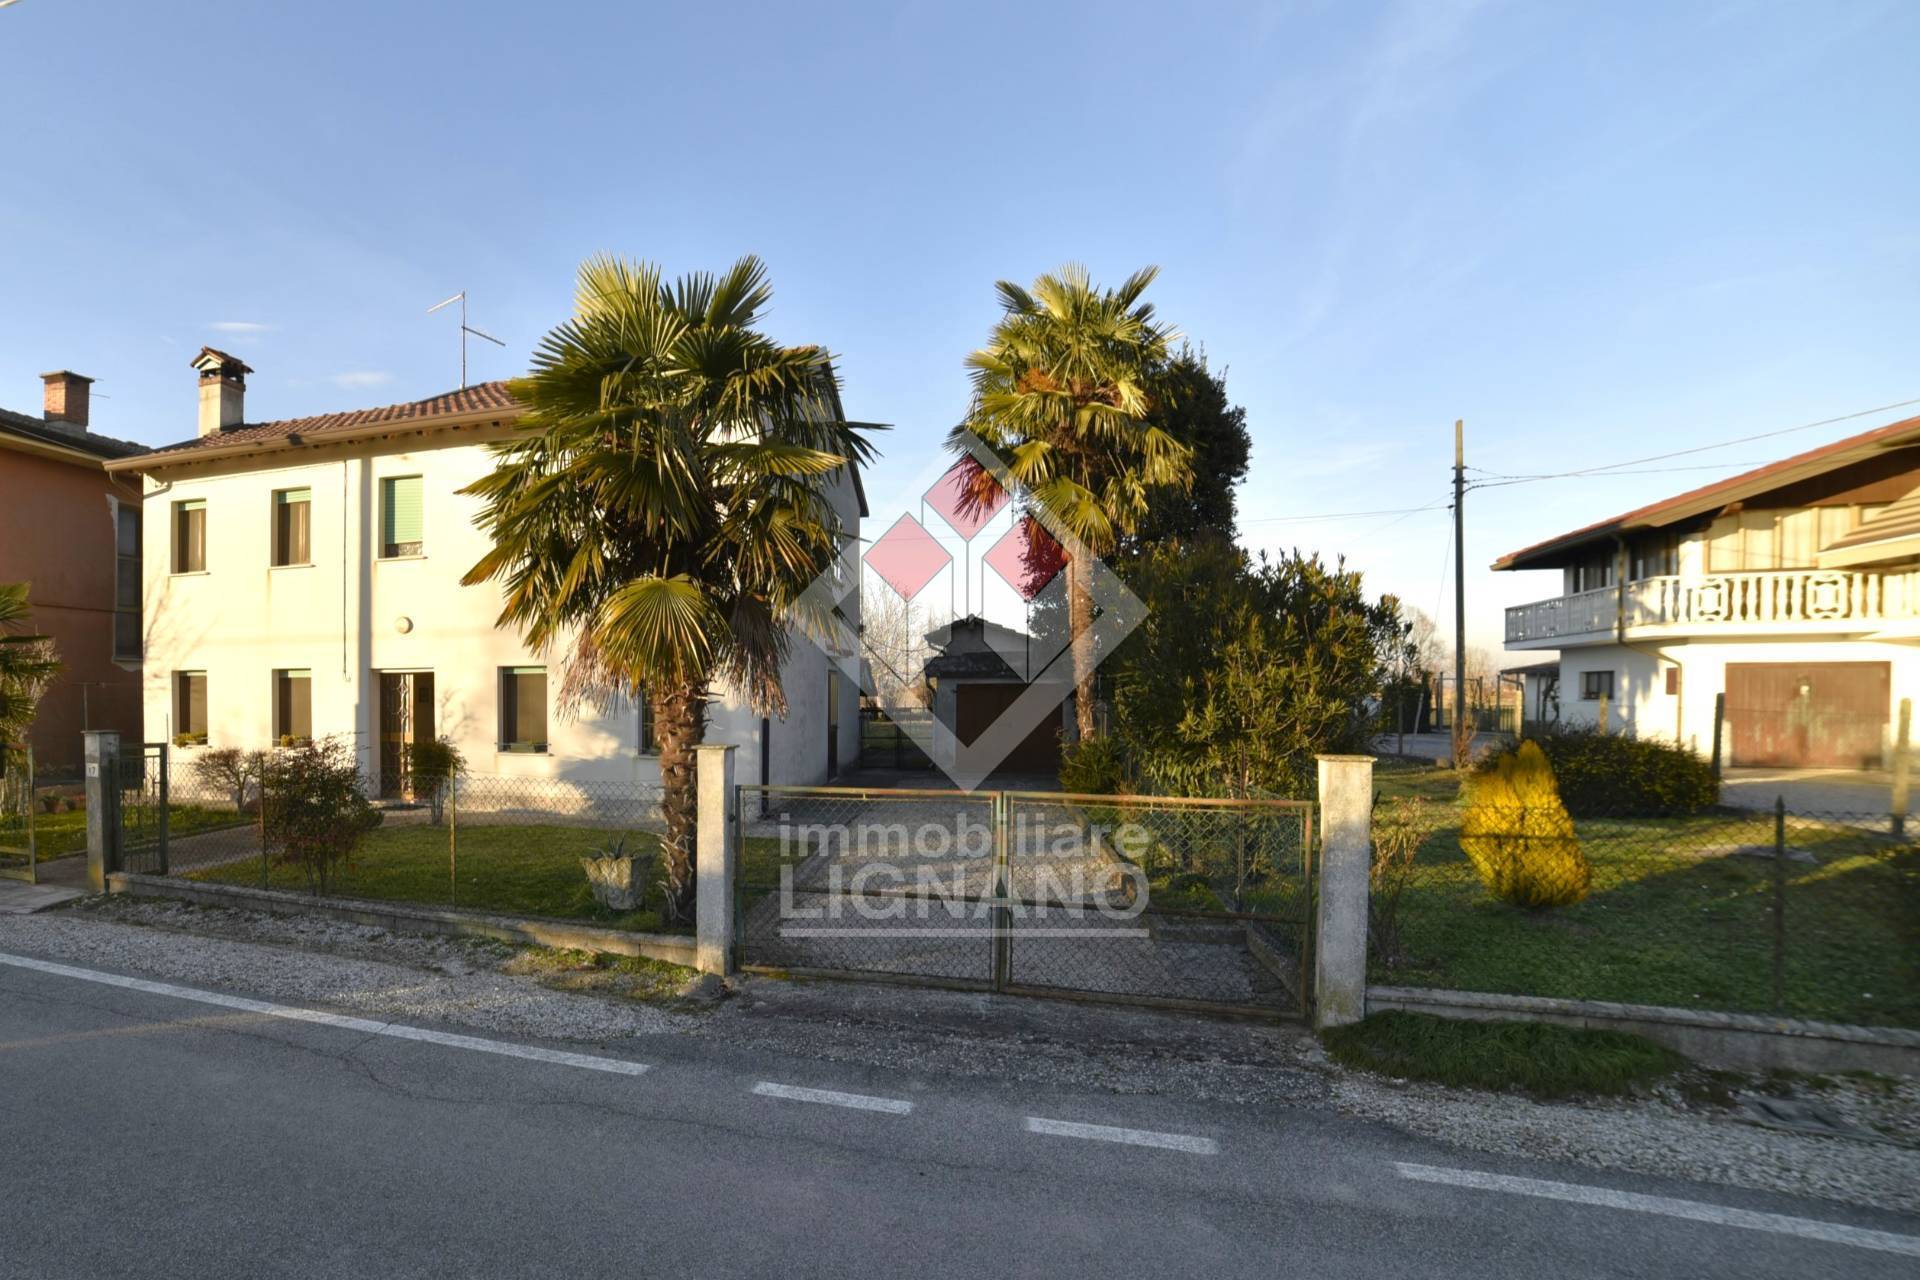 Casa indipendente con box, Portogruaro lugugnana